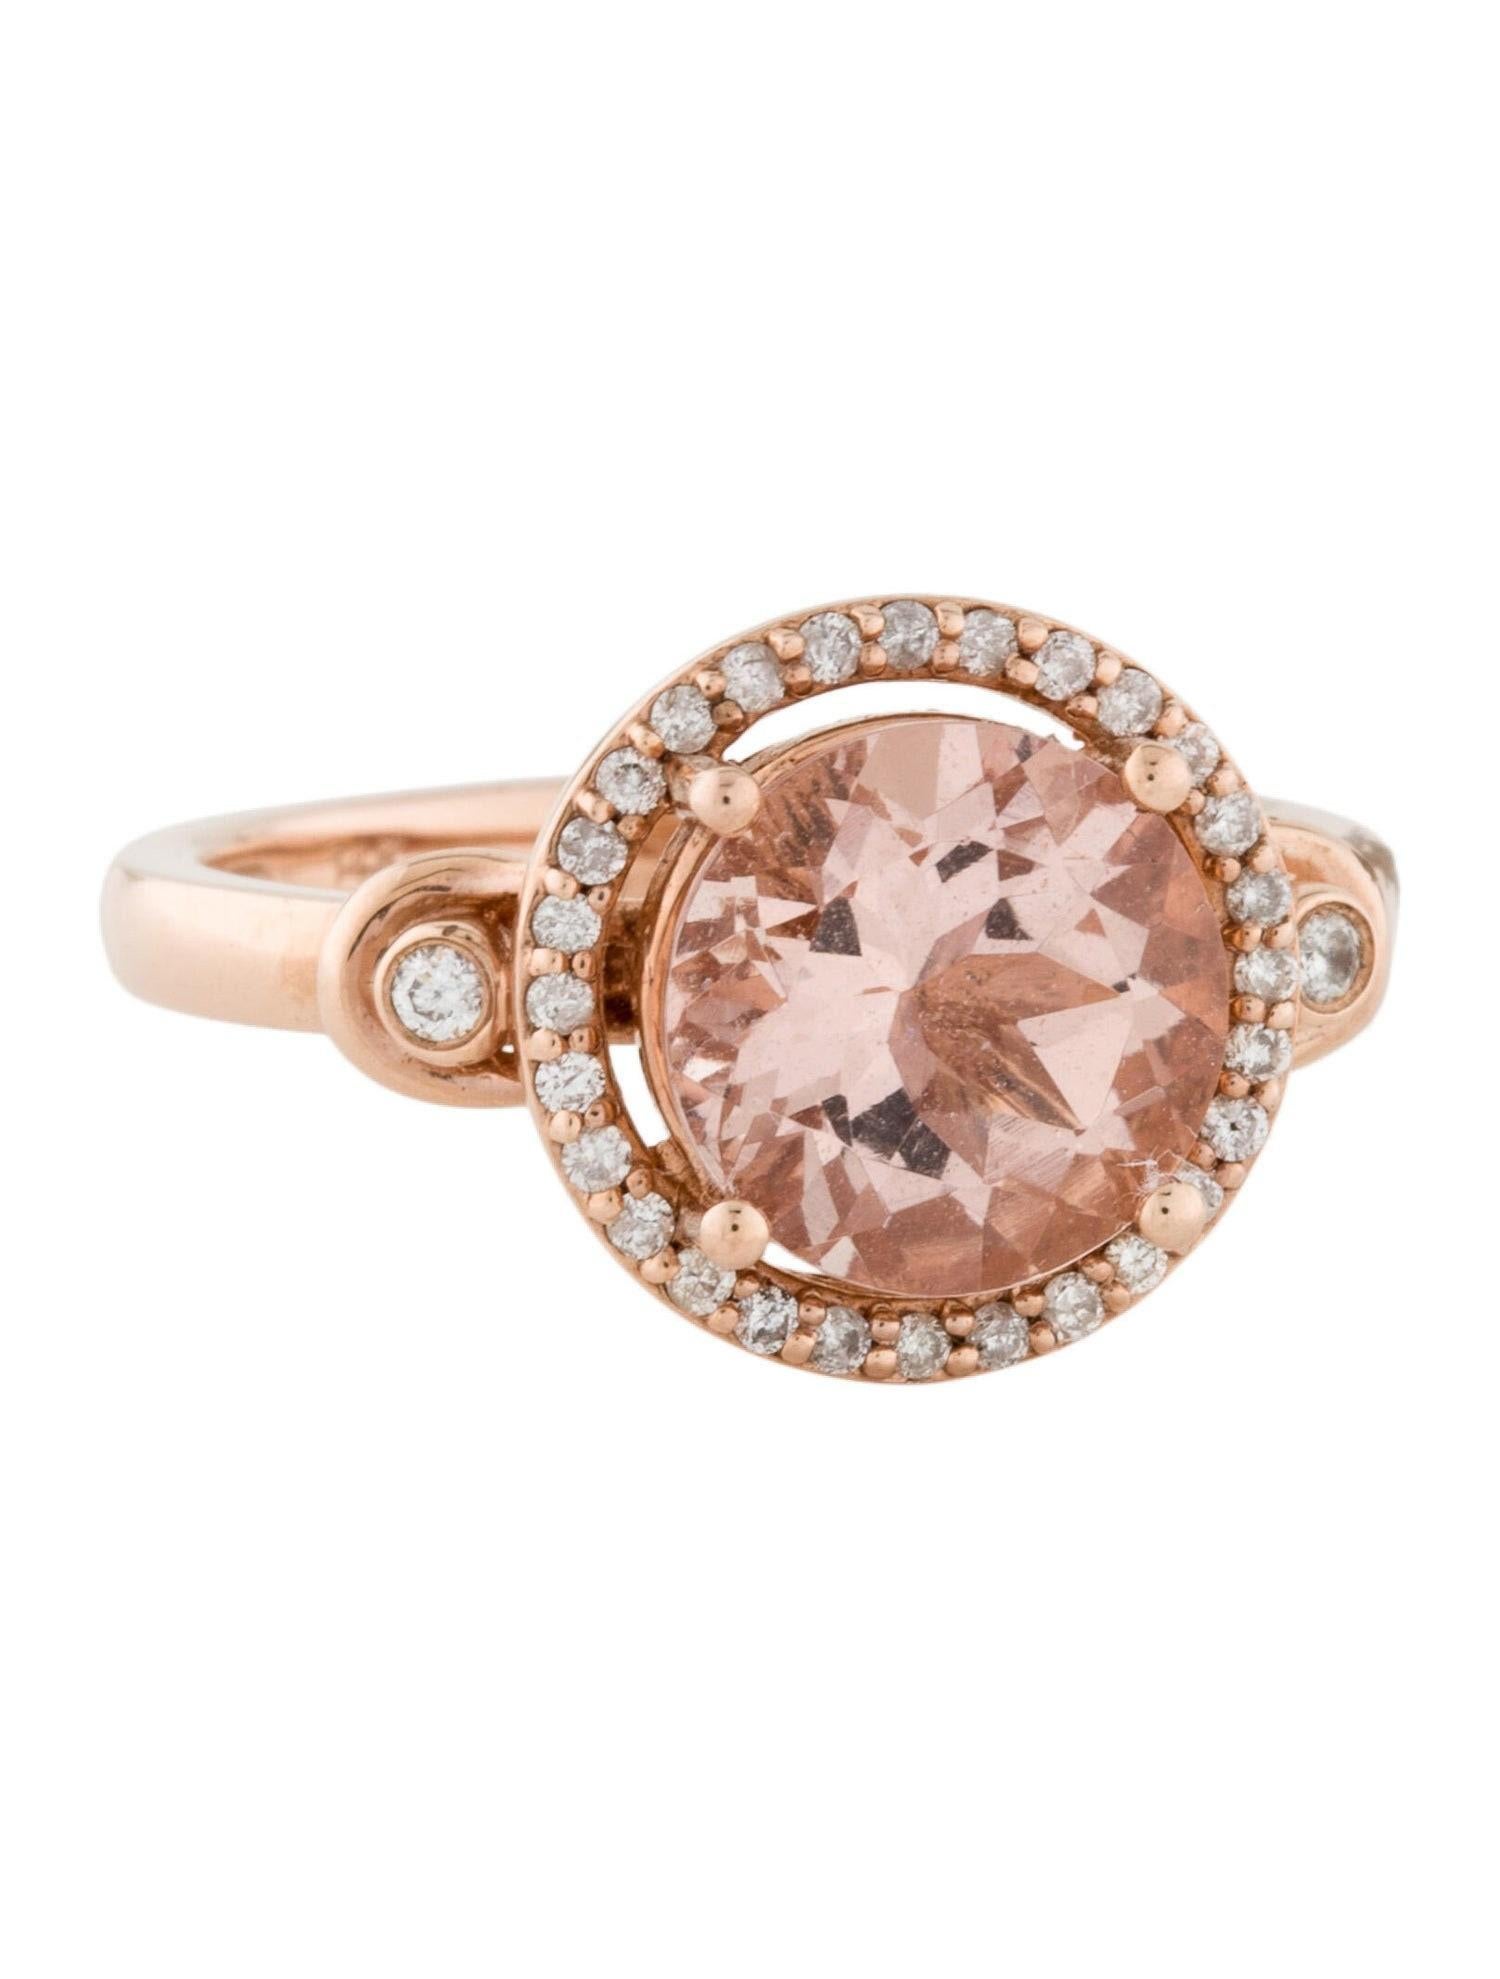 Cette magnifique bague en morganite naturelle et diamants incrustés est sertie dans de l'or rose massif 14K. La morganite naturelle de 2,55 carats de taille ronde présente une excellente couleur rose pêche et est entourée d'un halo de diamants